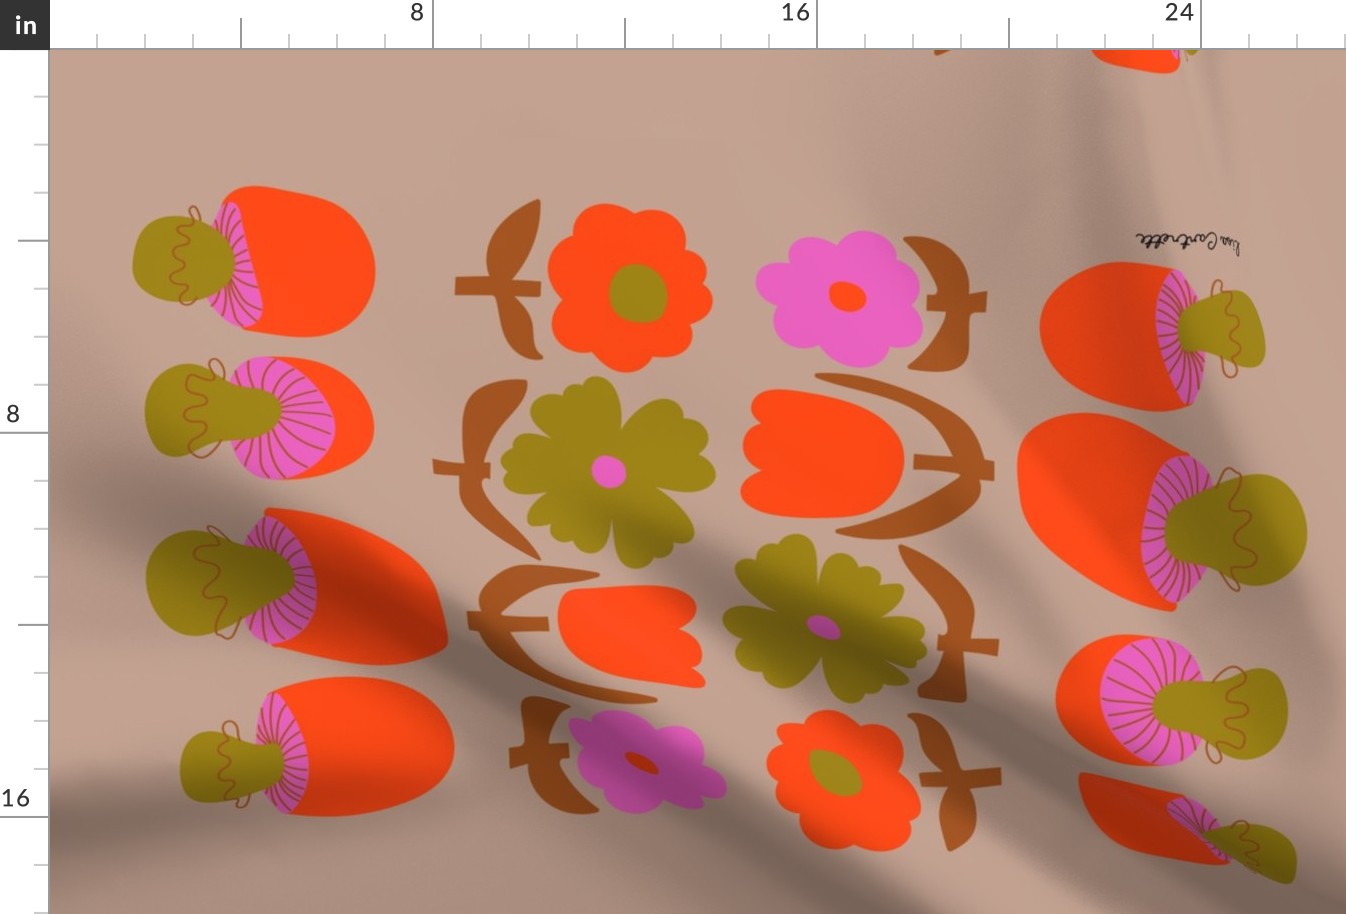 Retro Flowers & Mushrooms Tea Towel